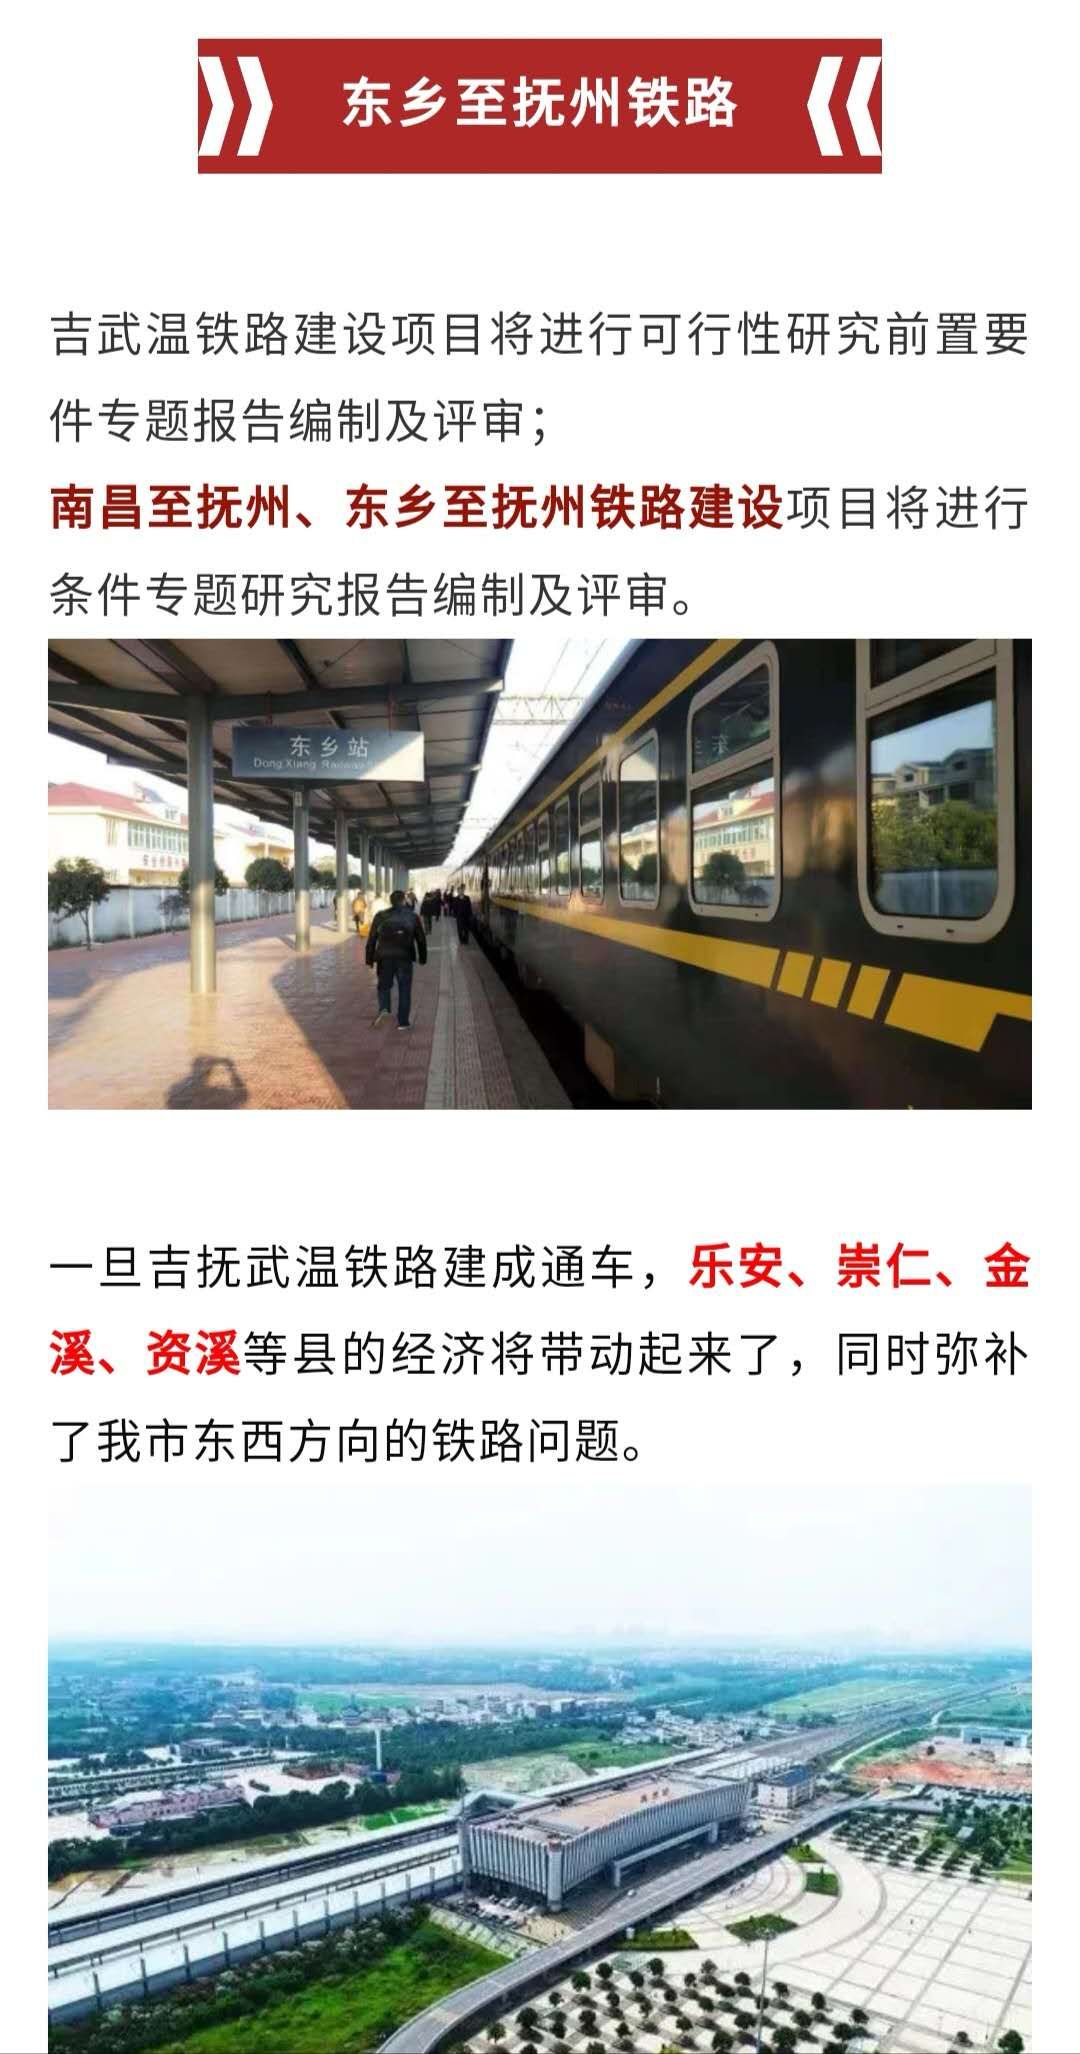 吉抚武温铁路最新进展金溪经济将获得大提升